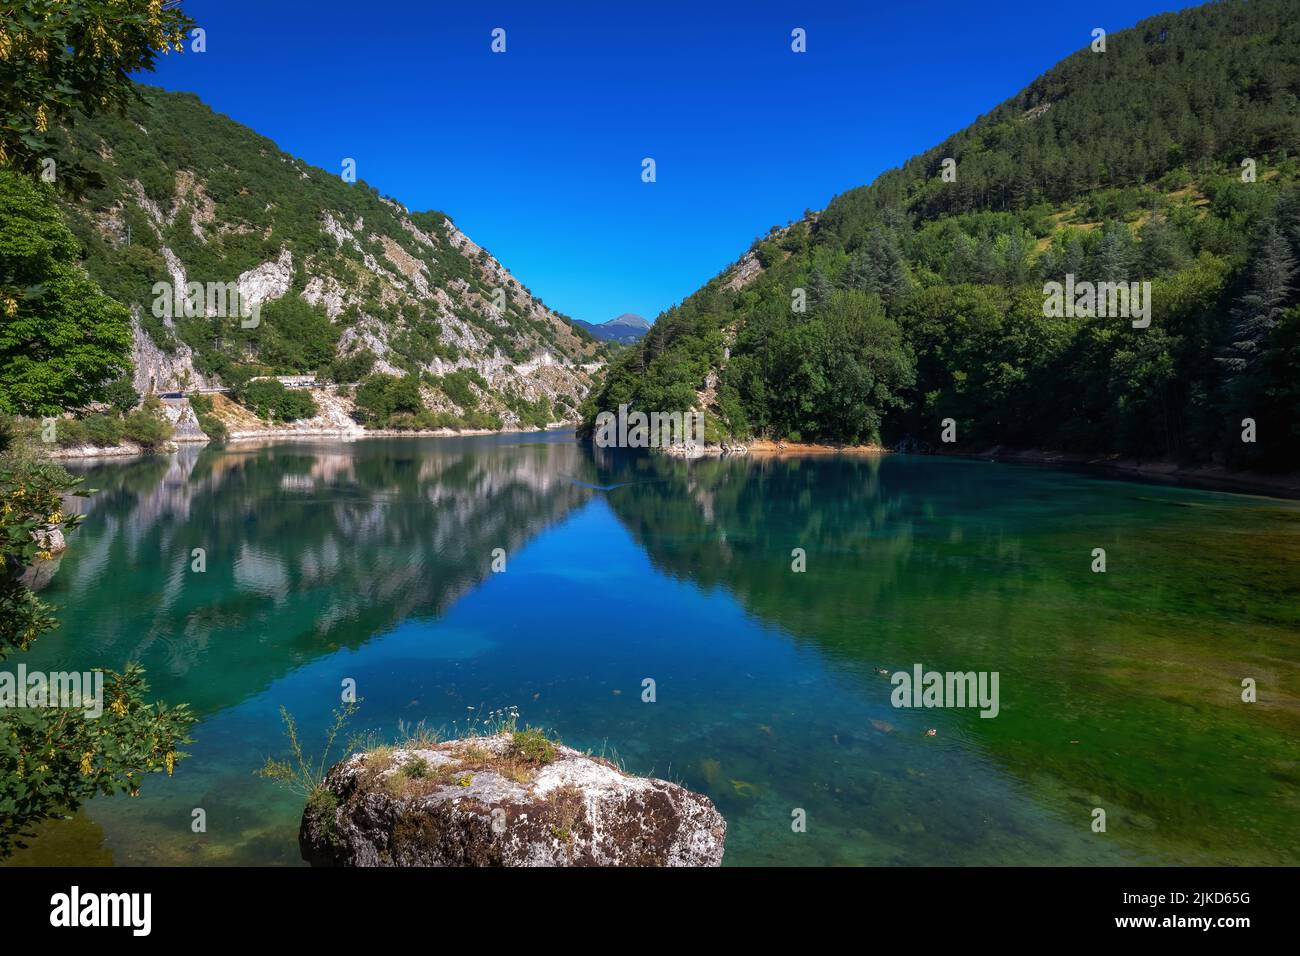 Piccolo lago circondato da montagne e speroni rocciosi, nel cuore verde di una natura quasi incontaminata. Lago di San Domenico, Abruzzo - Italia Foto Stock